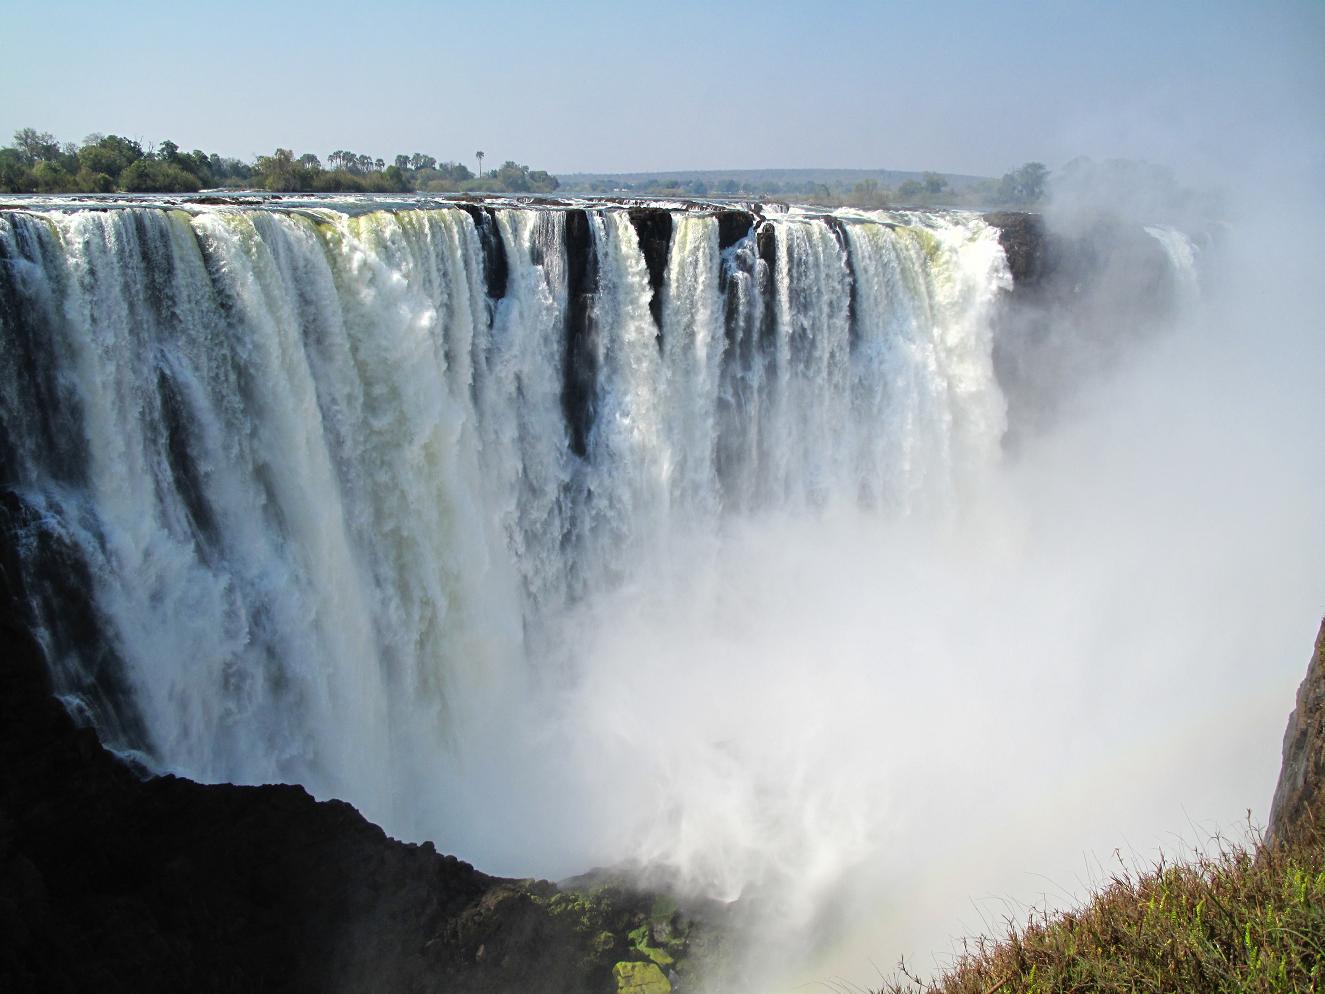 This Victoria Falls Zambia Picture